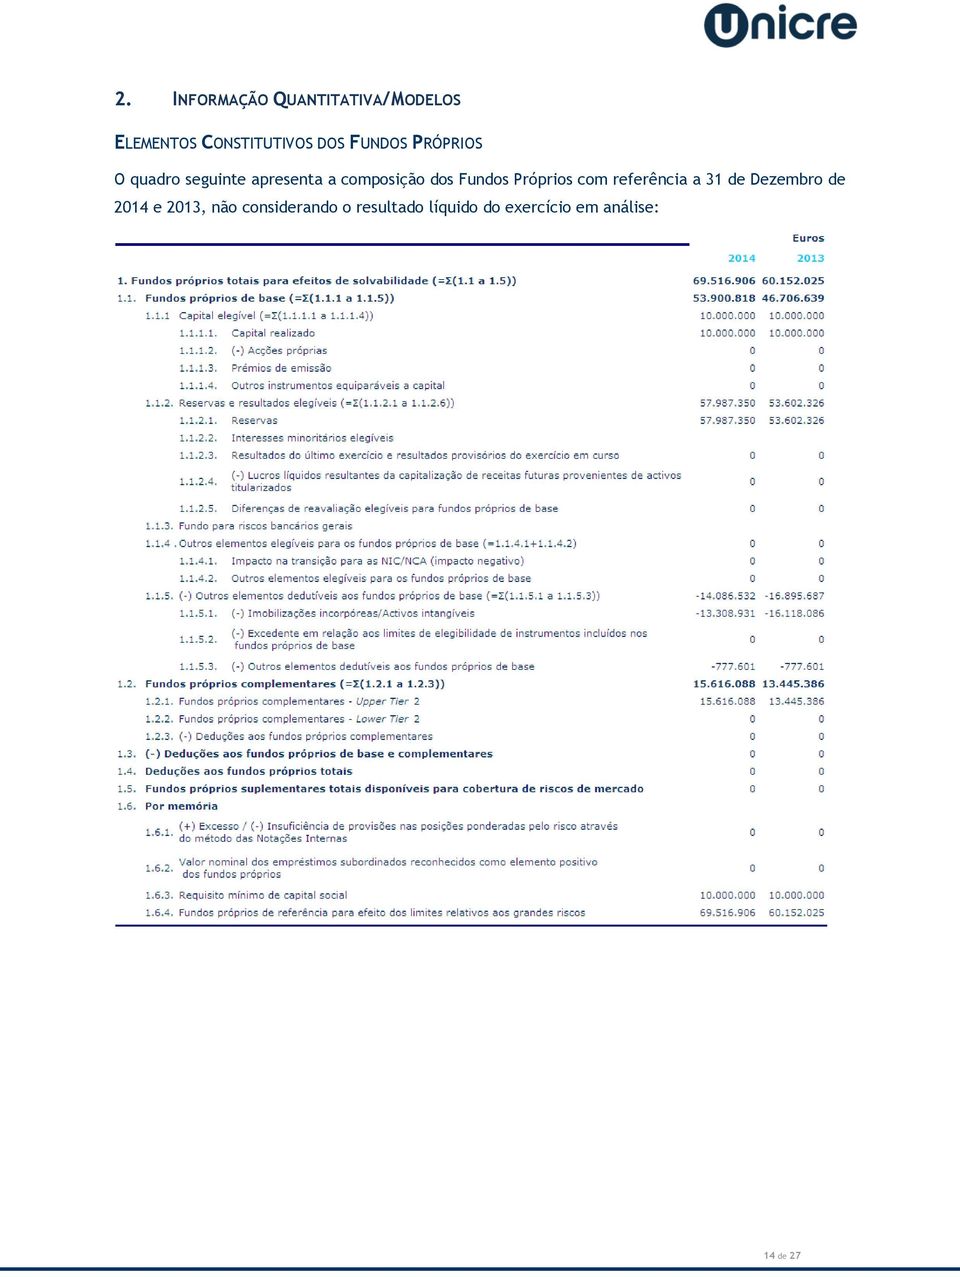 Fundos Próprios com referência a 31 de Dezembro de 2014 e 2013,